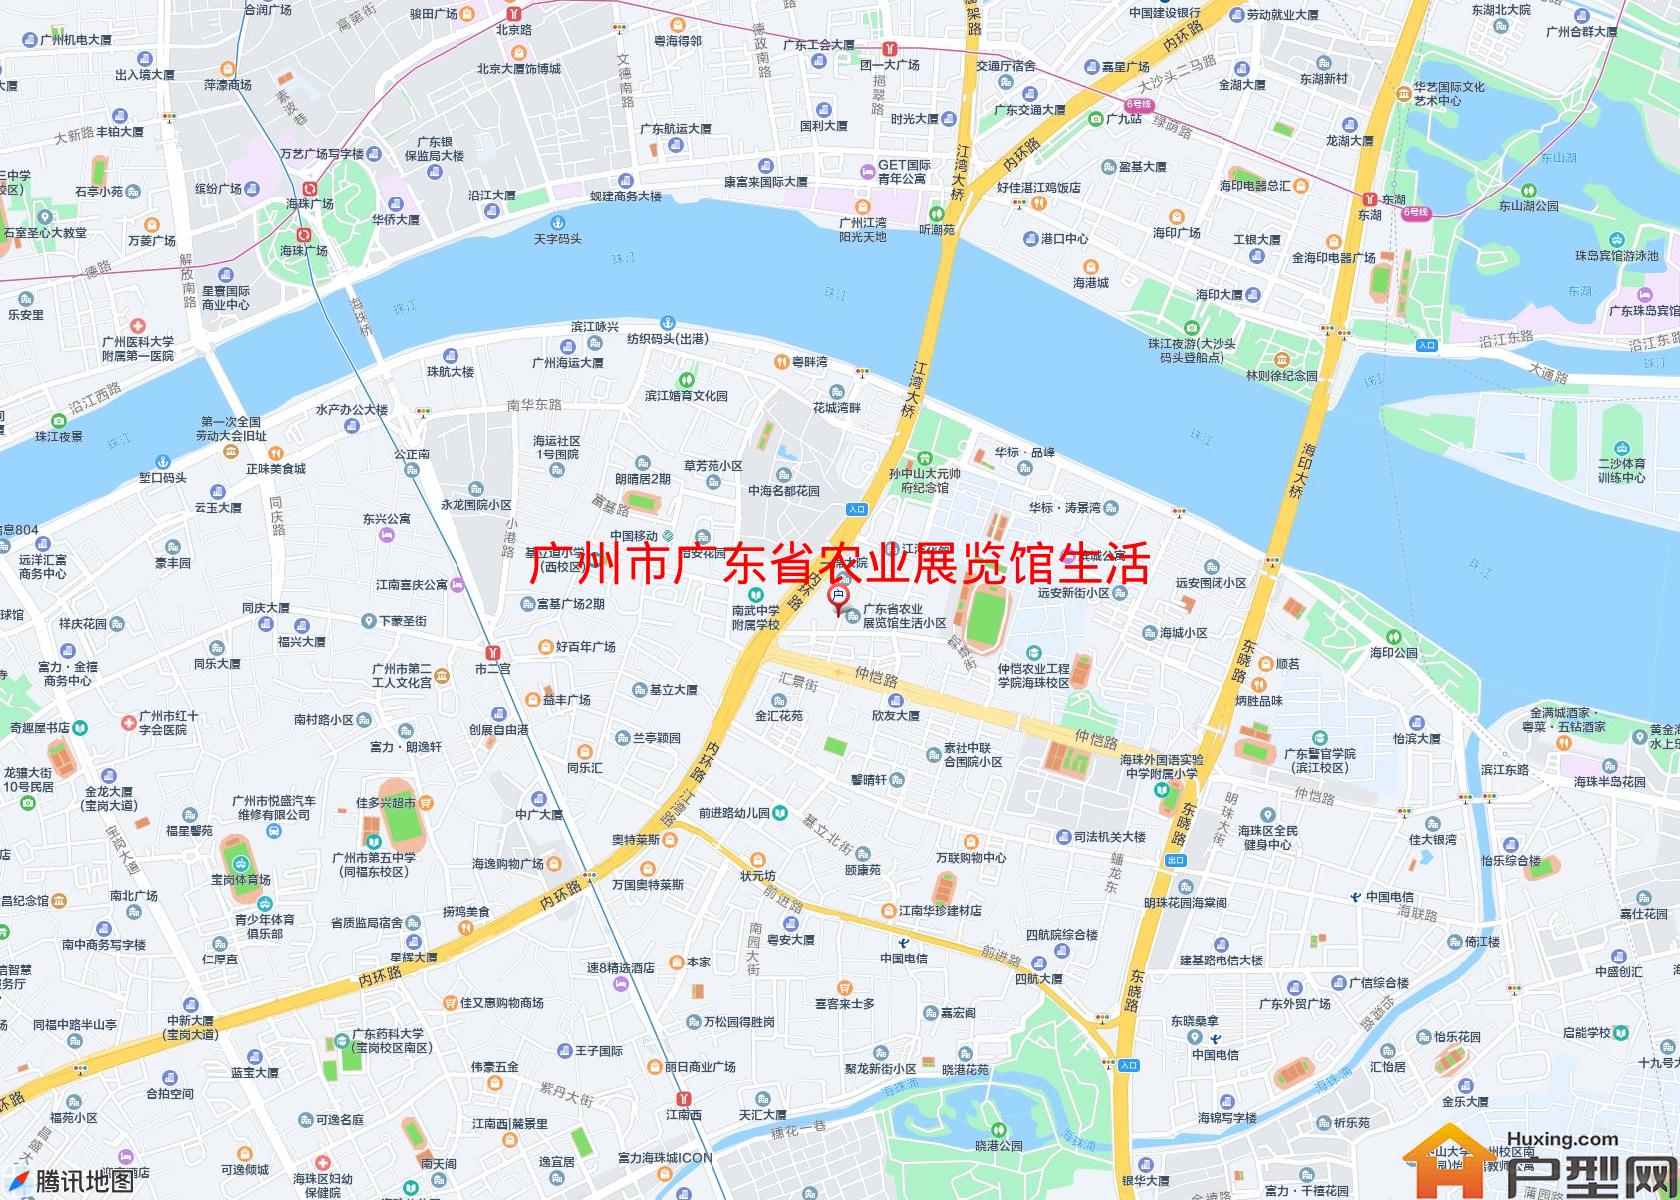 广东省农业展览馆生活小区小区 - 户型网